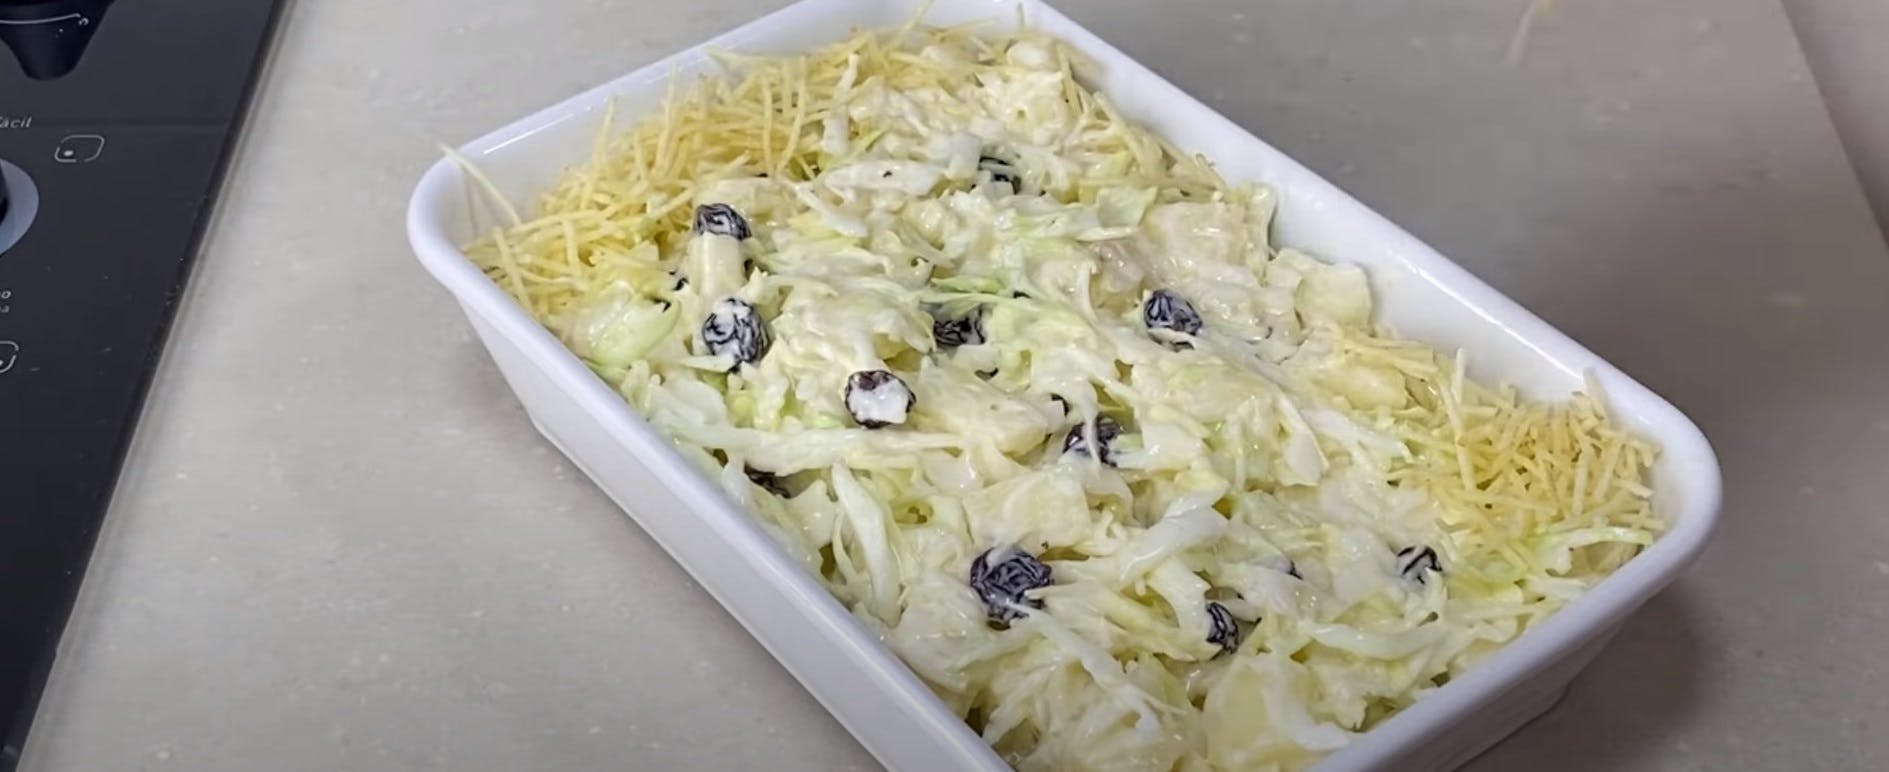 Salada de Repolho com Abacaxi